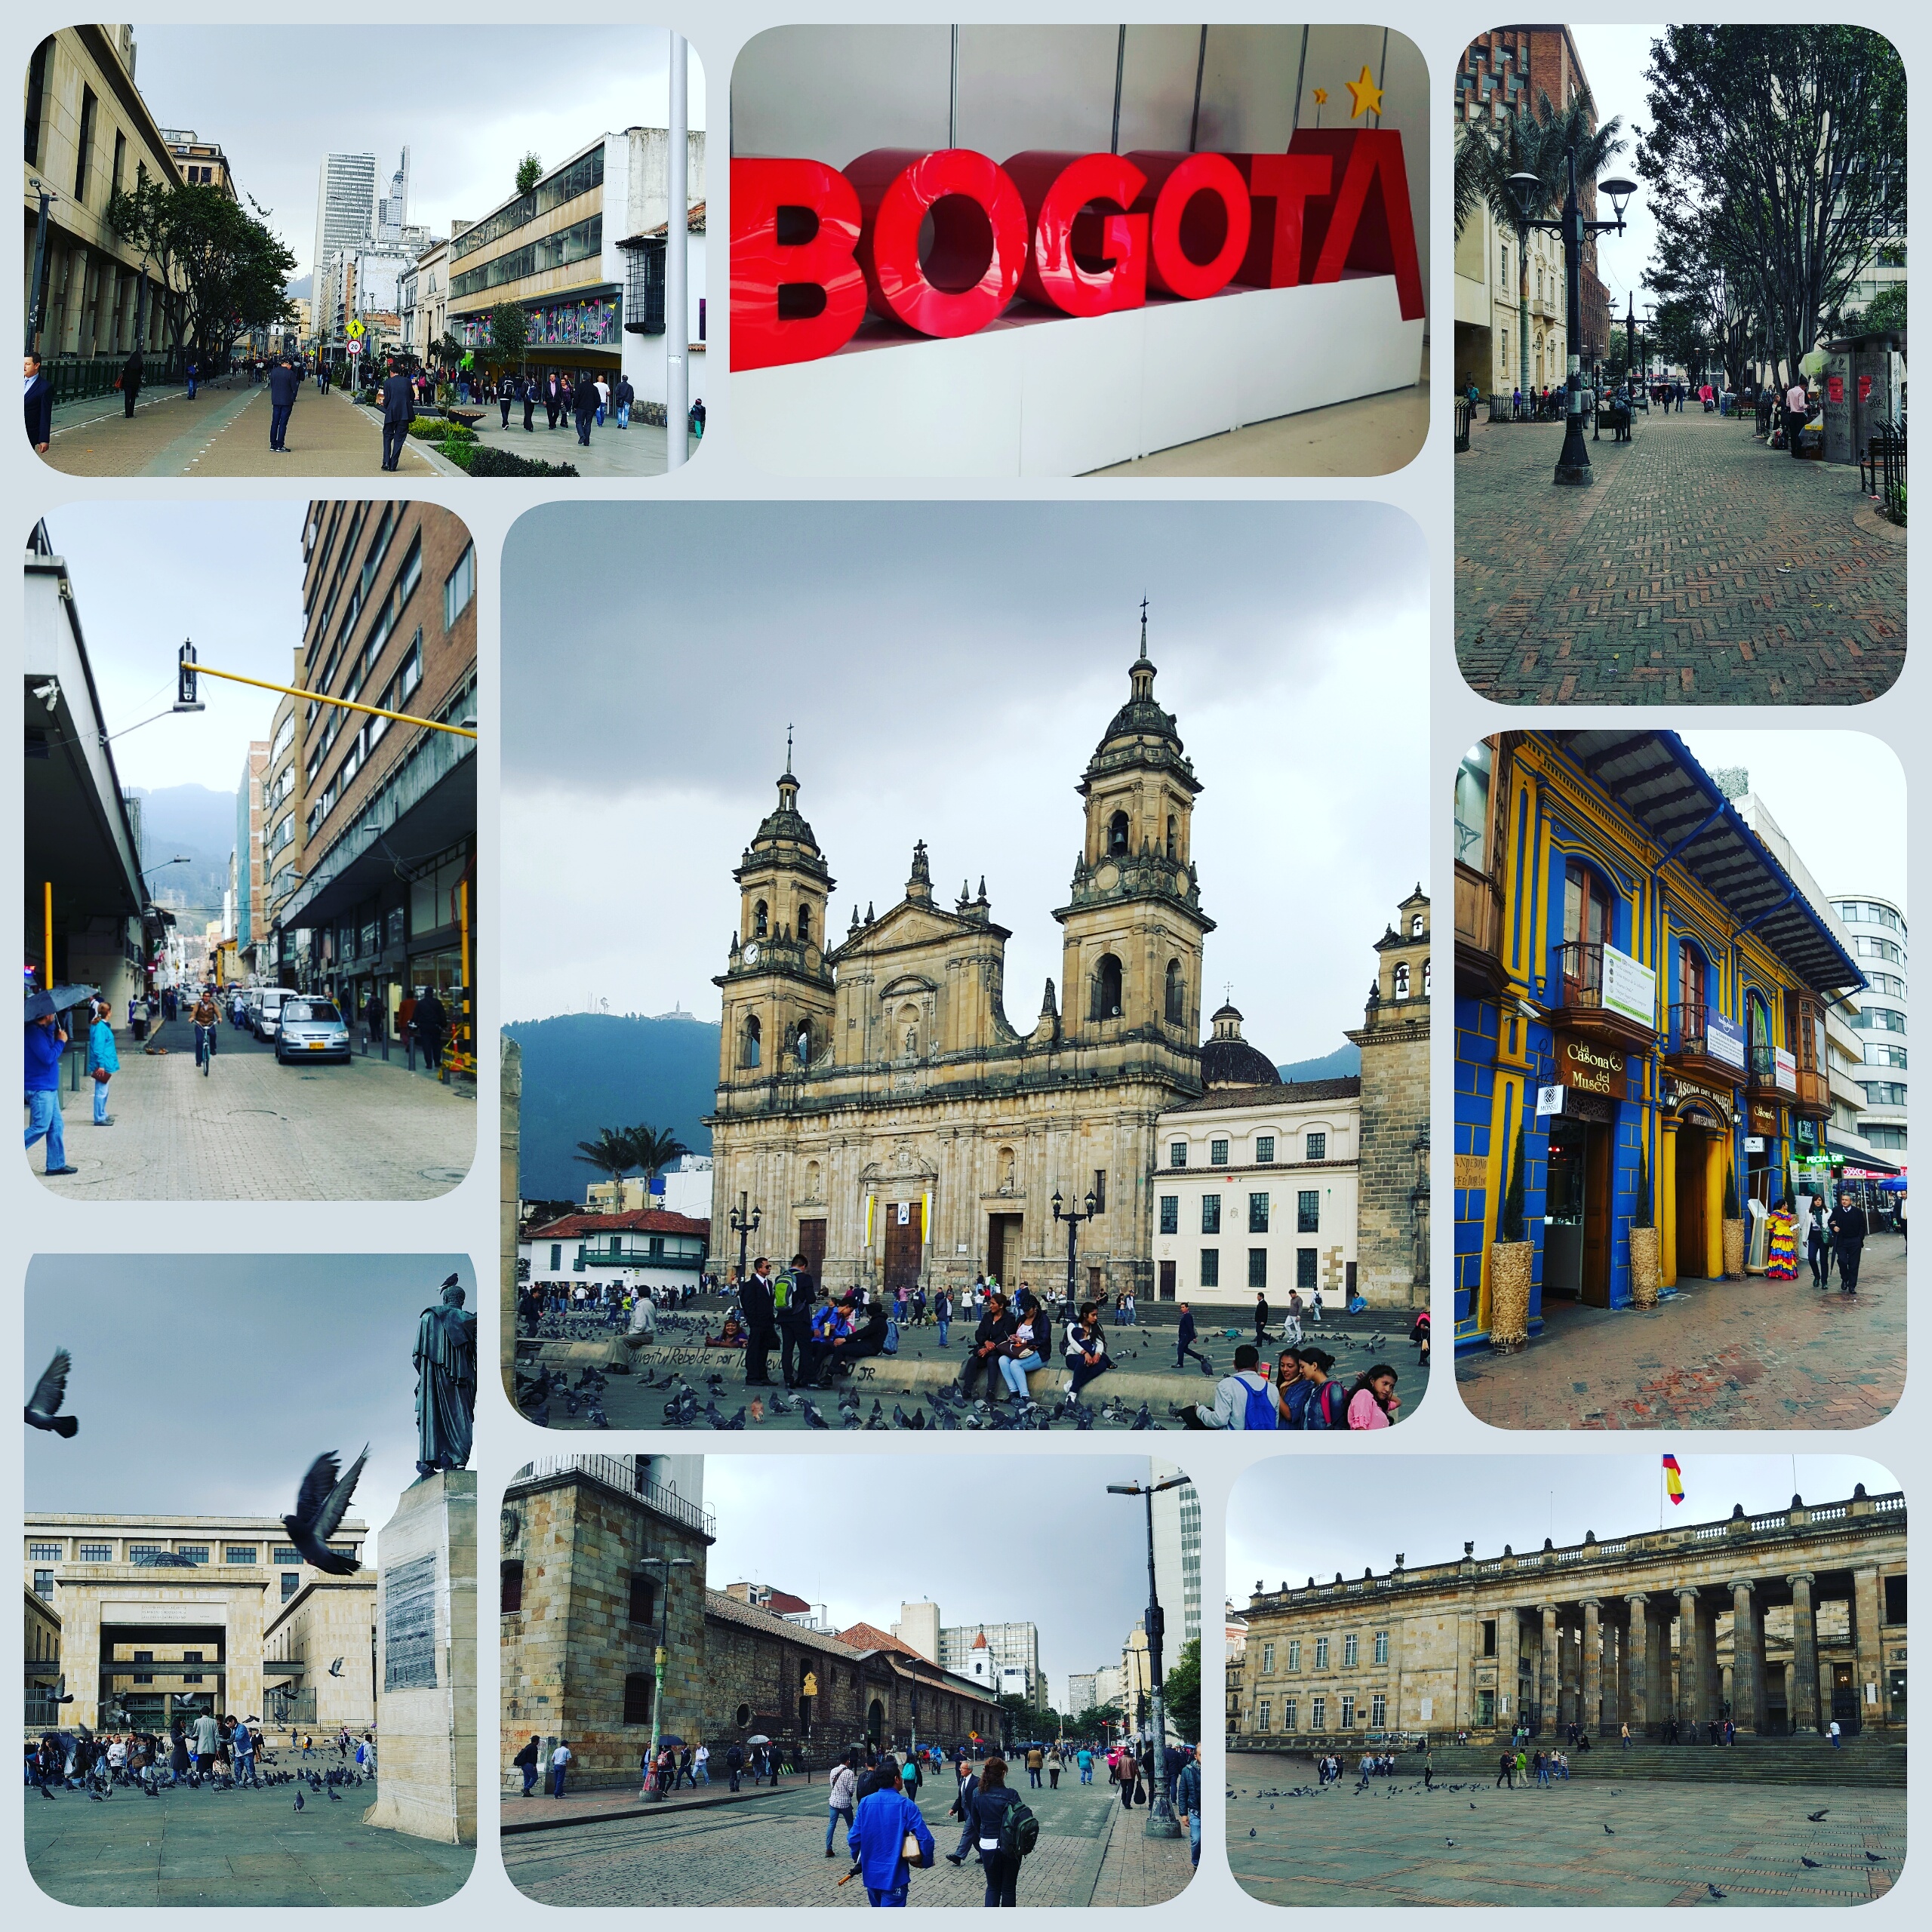 bogota-city-center